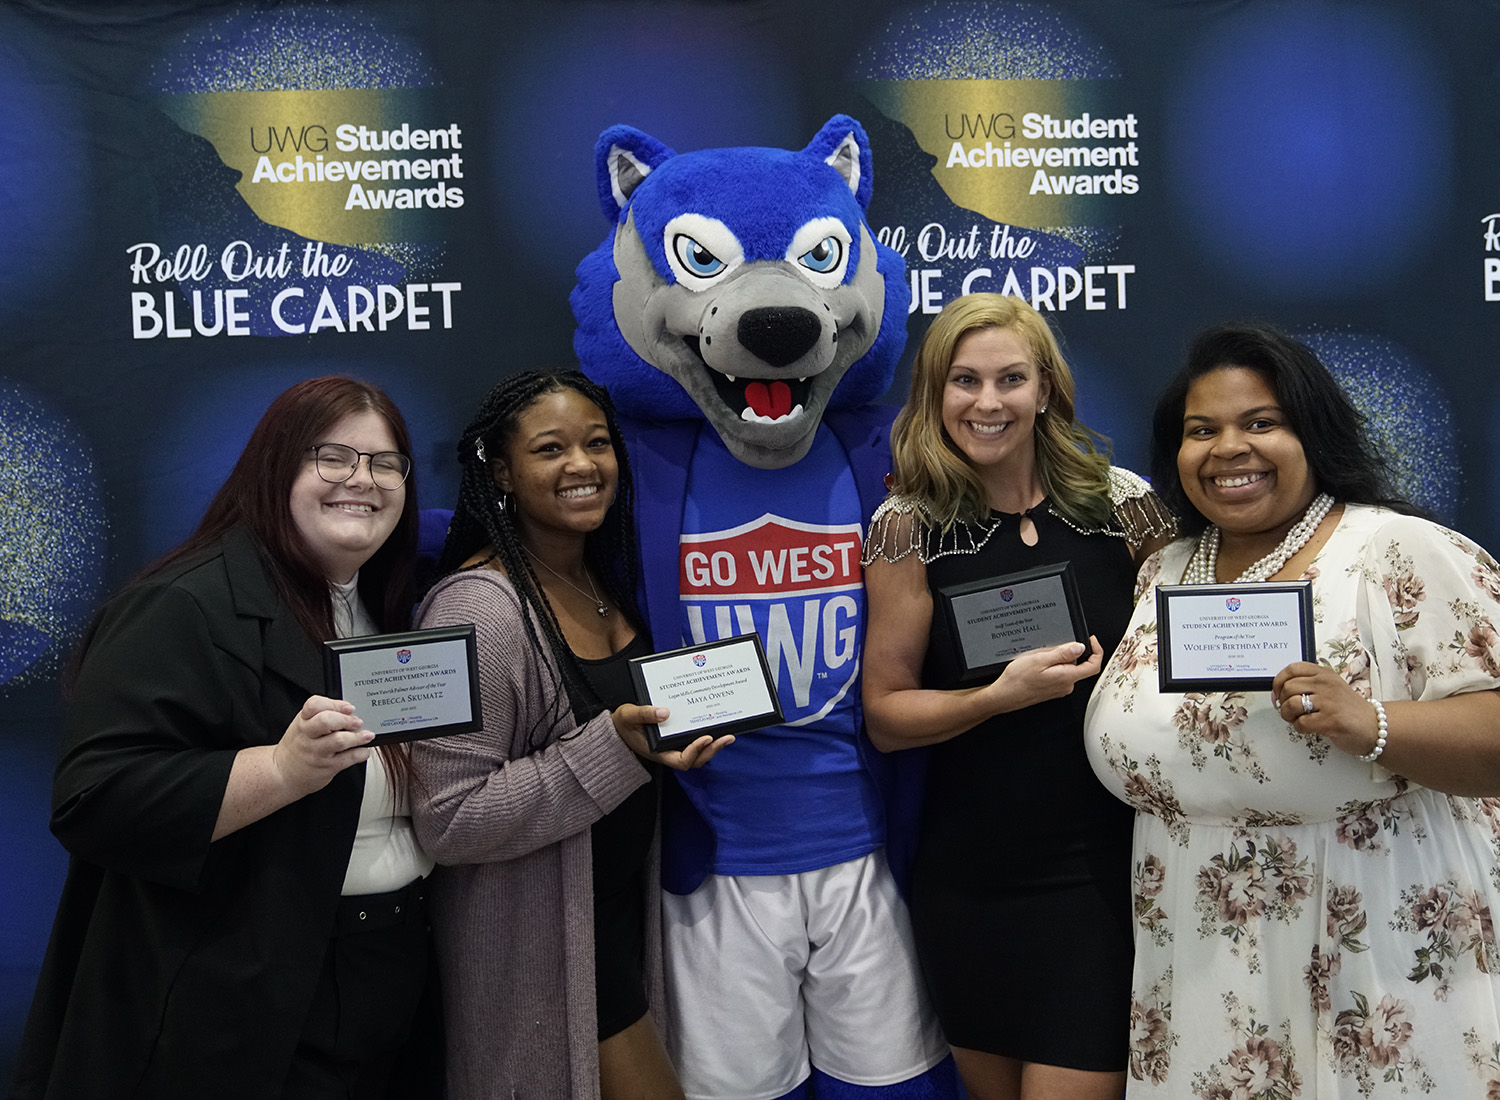 Student Achievement Awards recipients with Wolfie